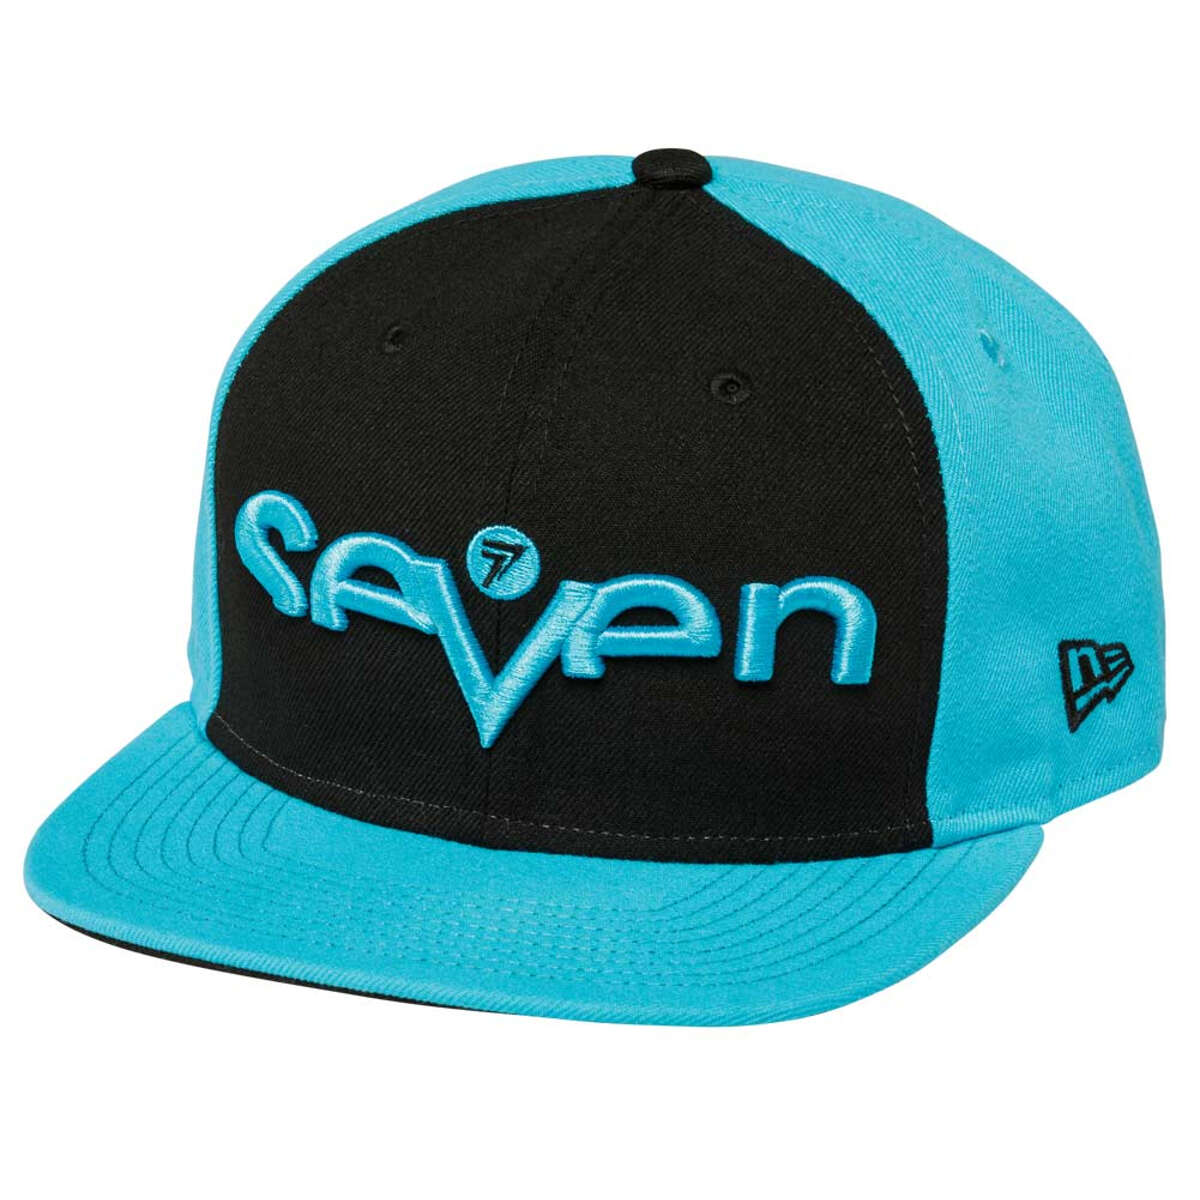 Seven MX Cappellino Snap Back Brand Black/Light Blue